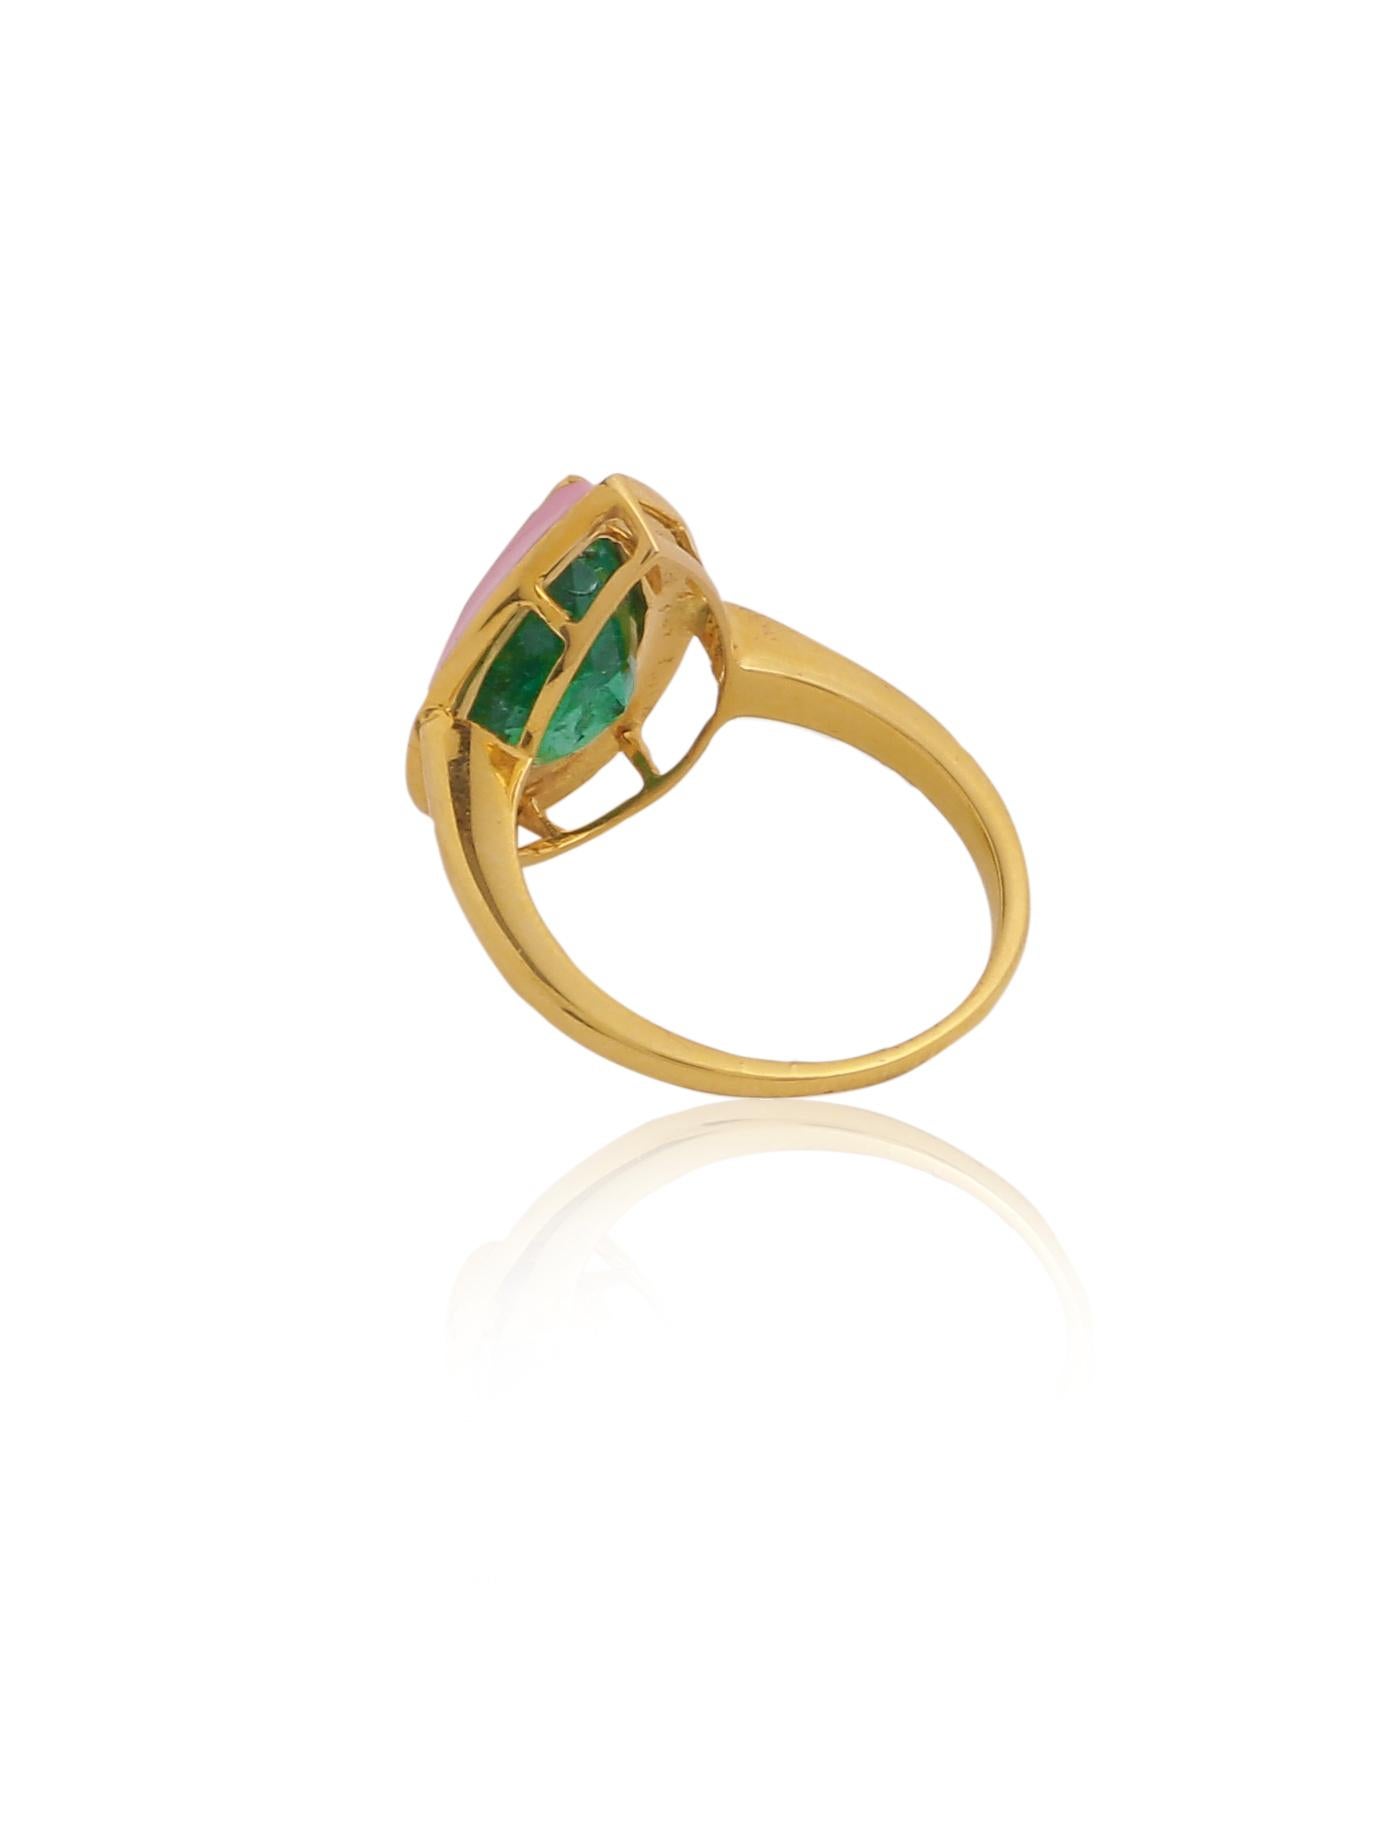 Ein schlichter und eleganter Smaragdring mit rosa Emaille.
Der natürliche, birnenförmige Smaragd stammt aus Sambia und ist naturbelassen. Der Ring kann von Frauen jeden Alters getragen werden und ist ein ideales Geschenk für Ihre Liebsten. 
Das